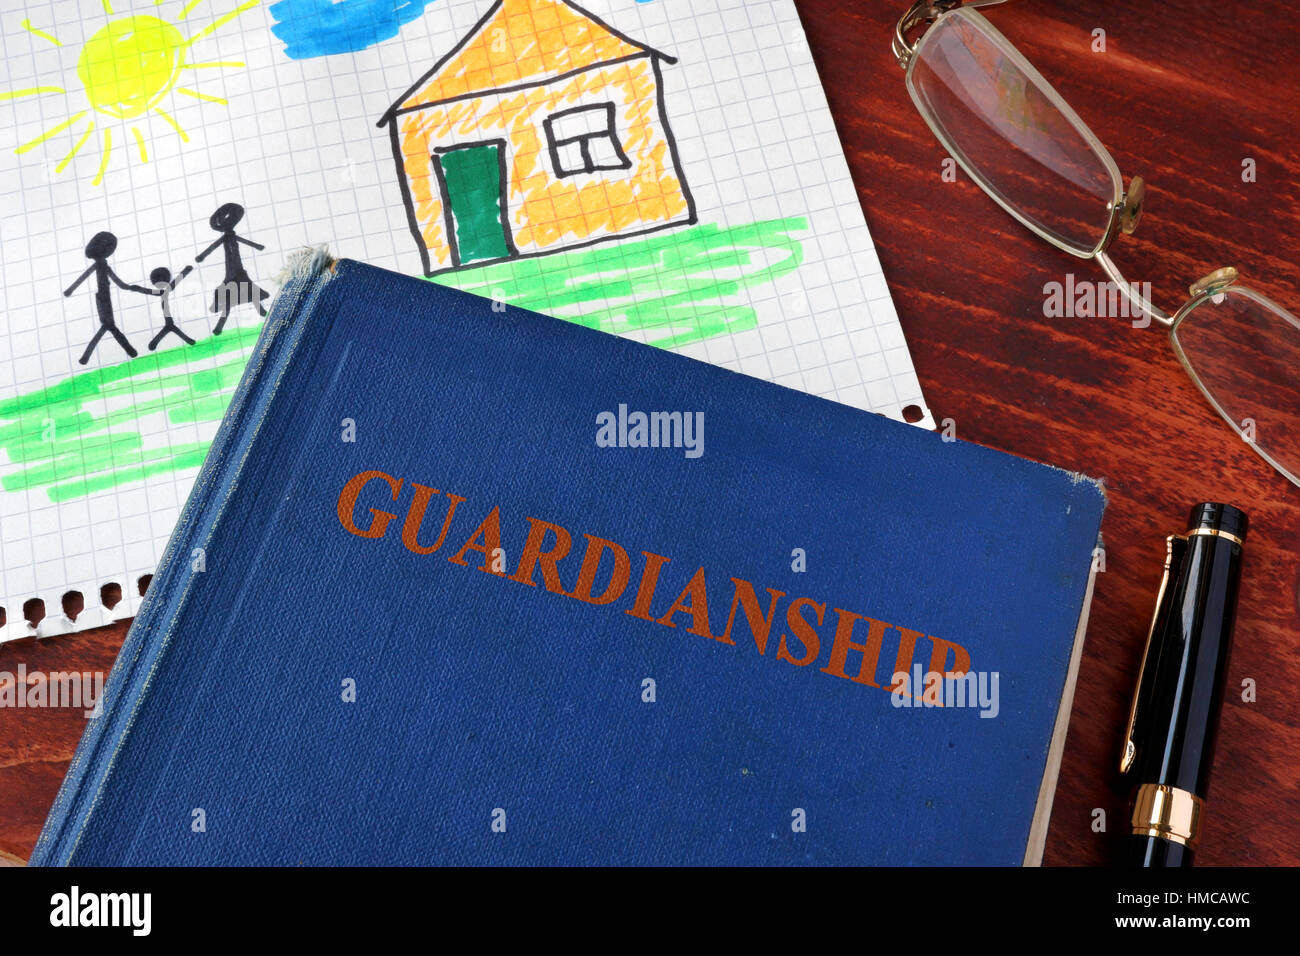 Libro con título Guardianships y foto de los niños. Foto de stock